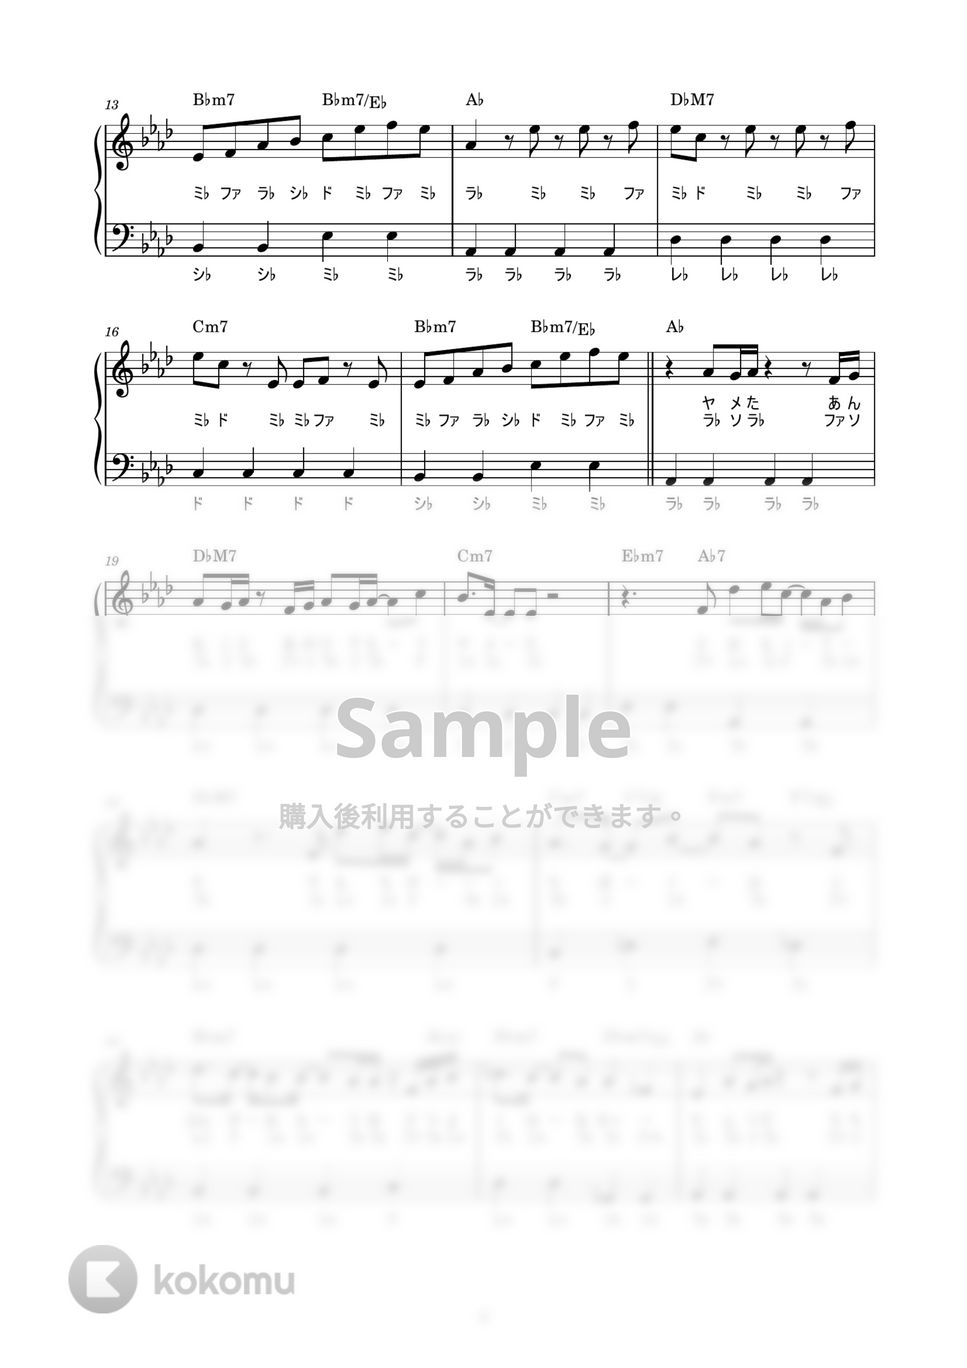 藤井風 - 青春病 (かんたん / 歌詞付き / ドレミ付き / 初心者) by piano.tokyo